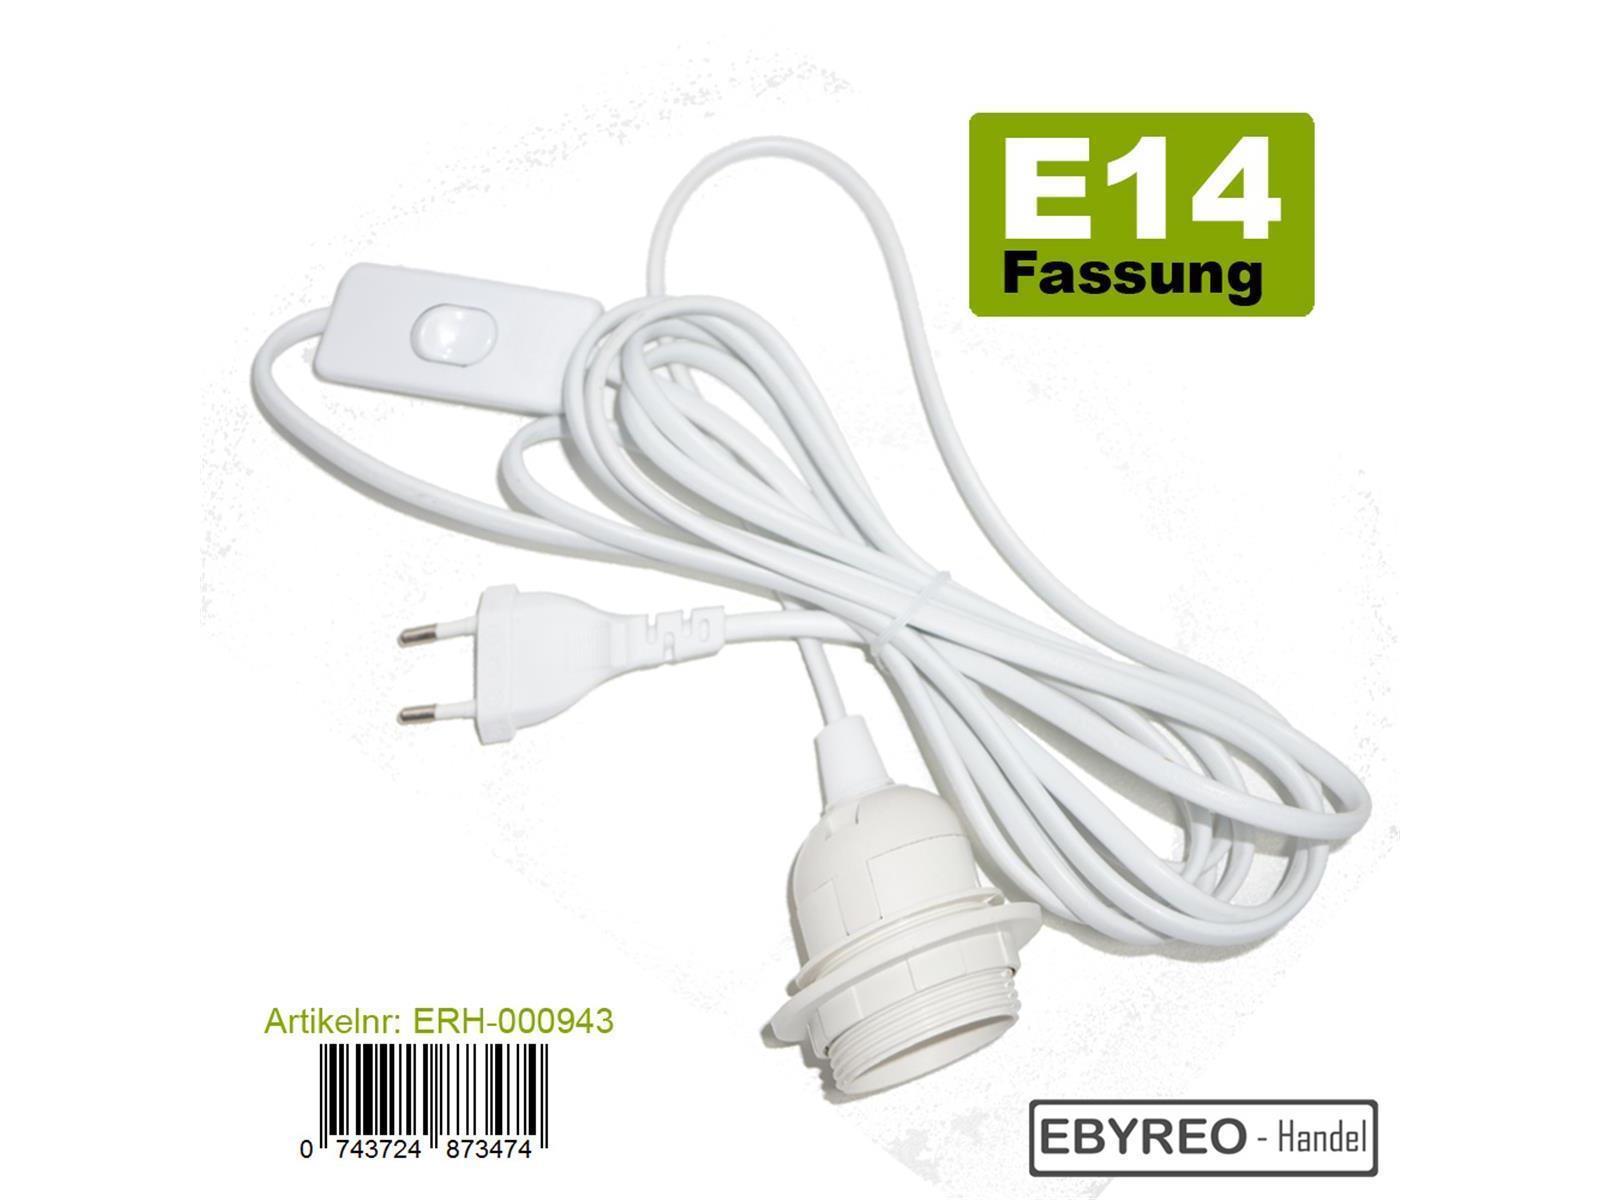 EbyReo® - Netzkabel mit Schalter und Fassung E14